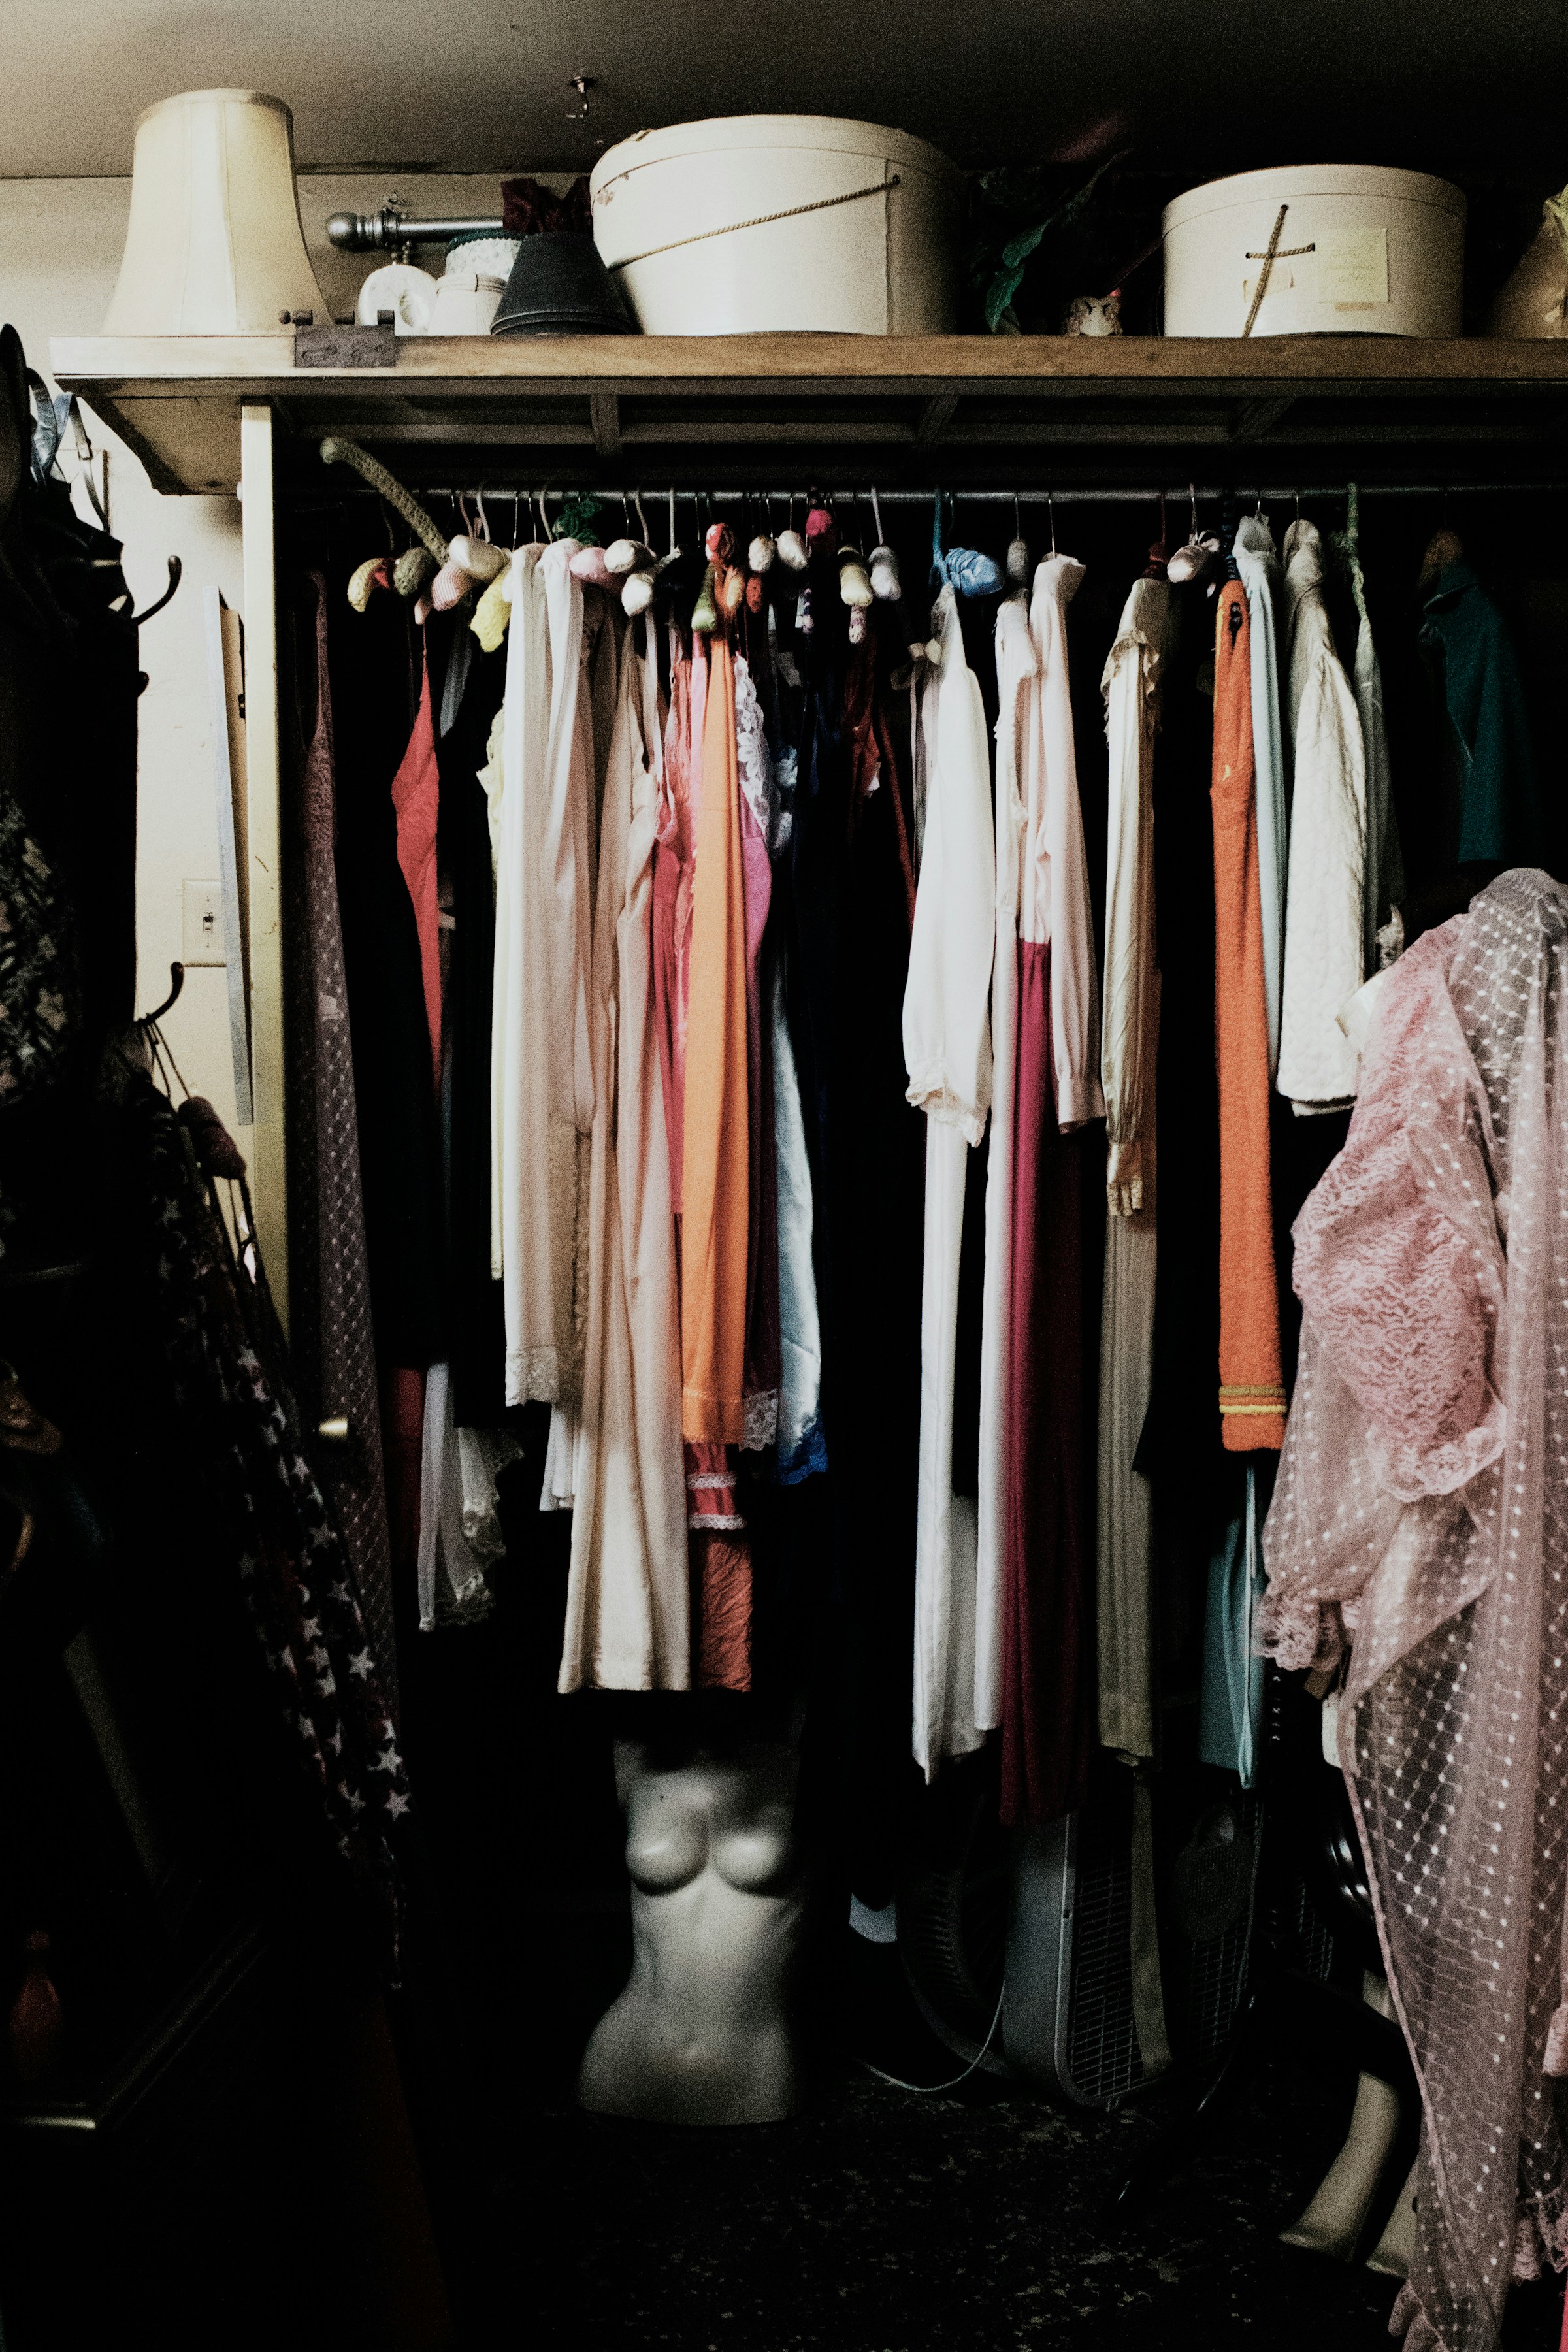 A walk-in closet | Source: Unsplash